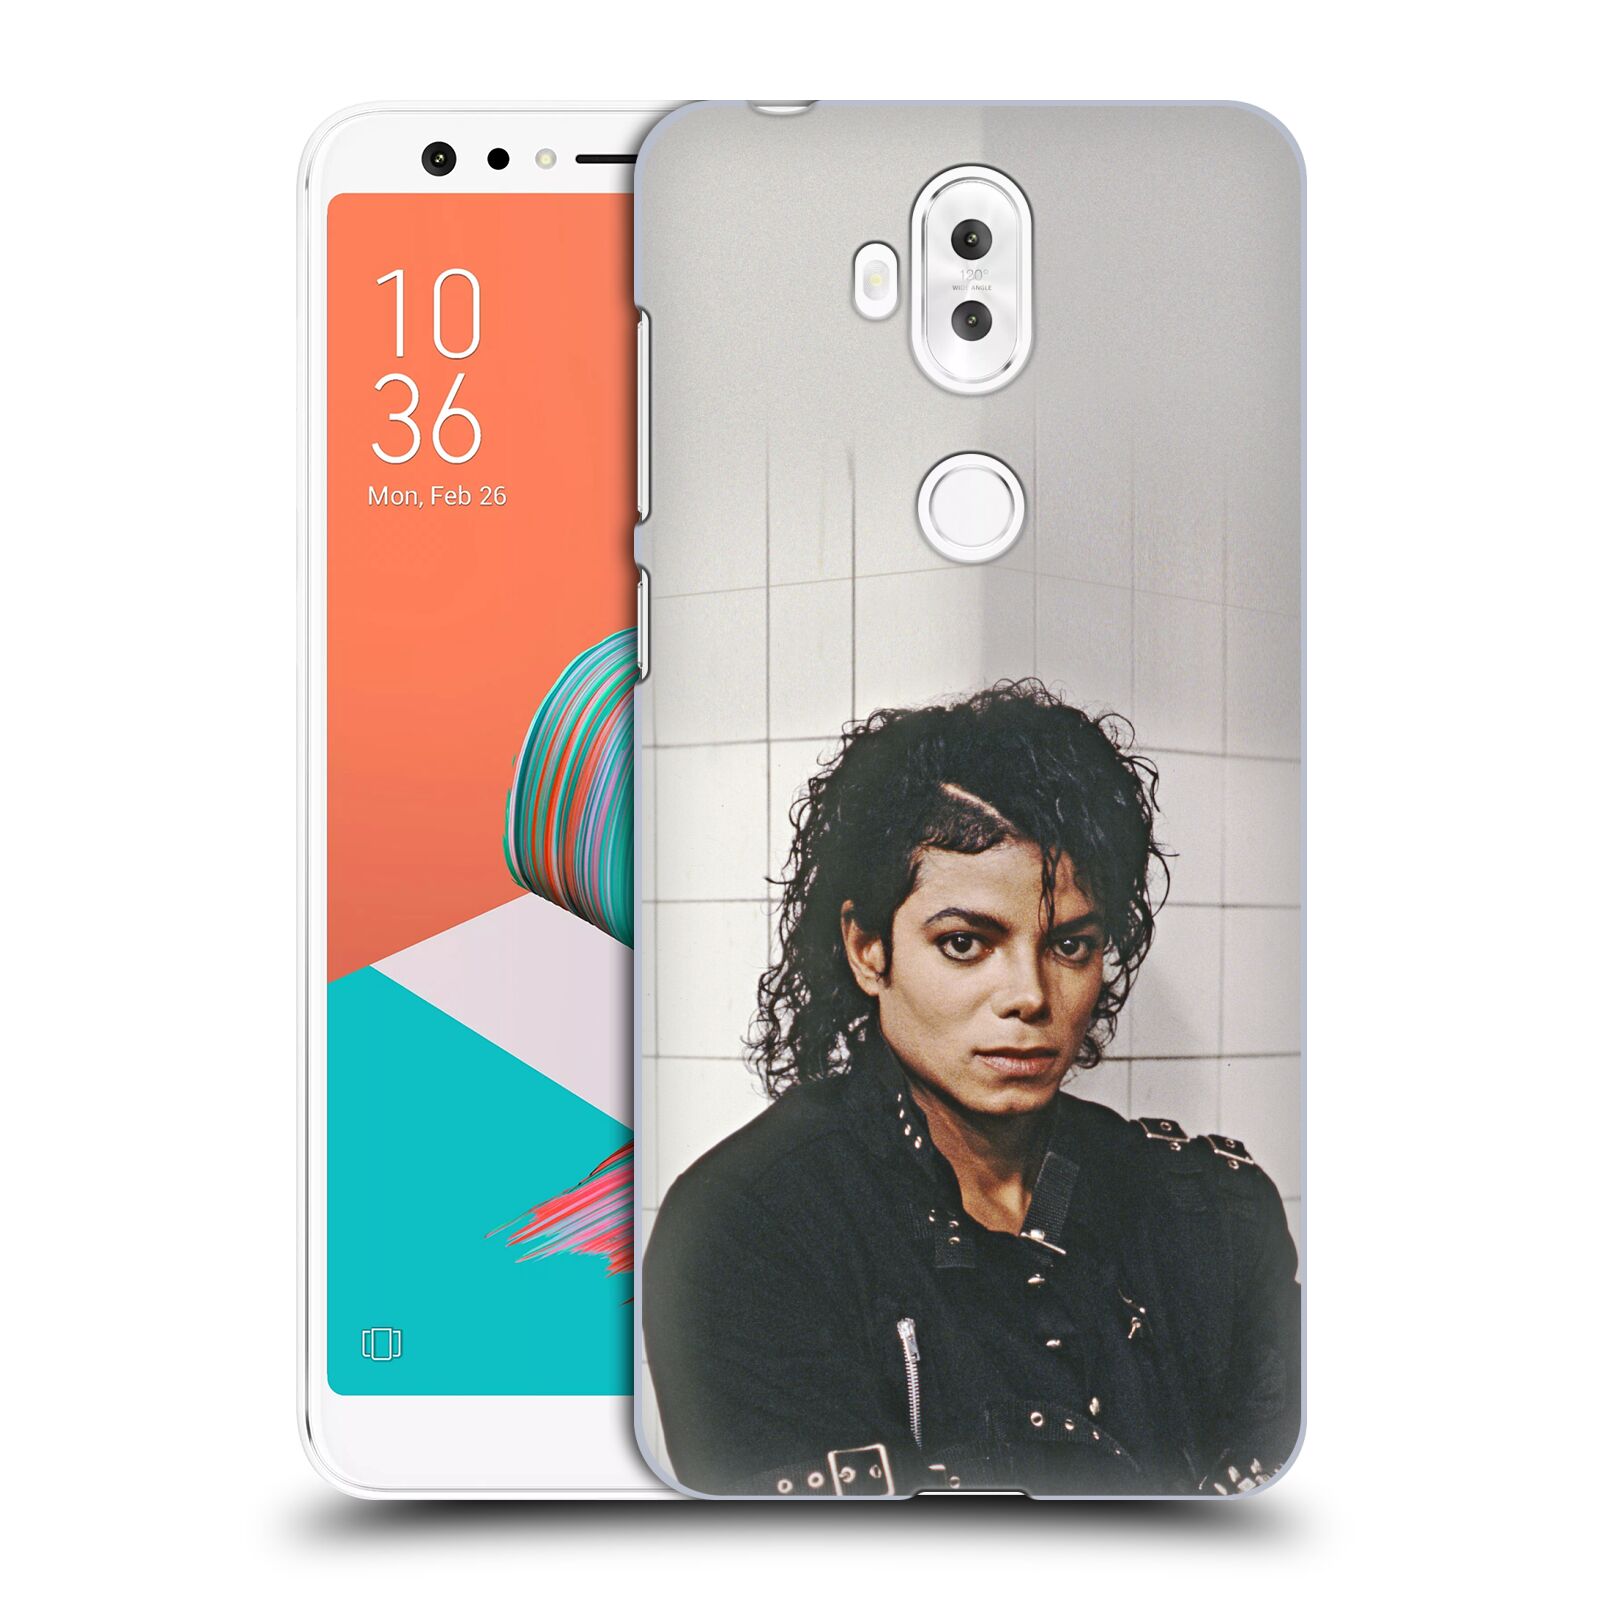 Zadní obal pro mobil Asus Zenfone 5 Lite ZC600KL - HEAD CASE - Zpěvák Michael Jackson - pohled